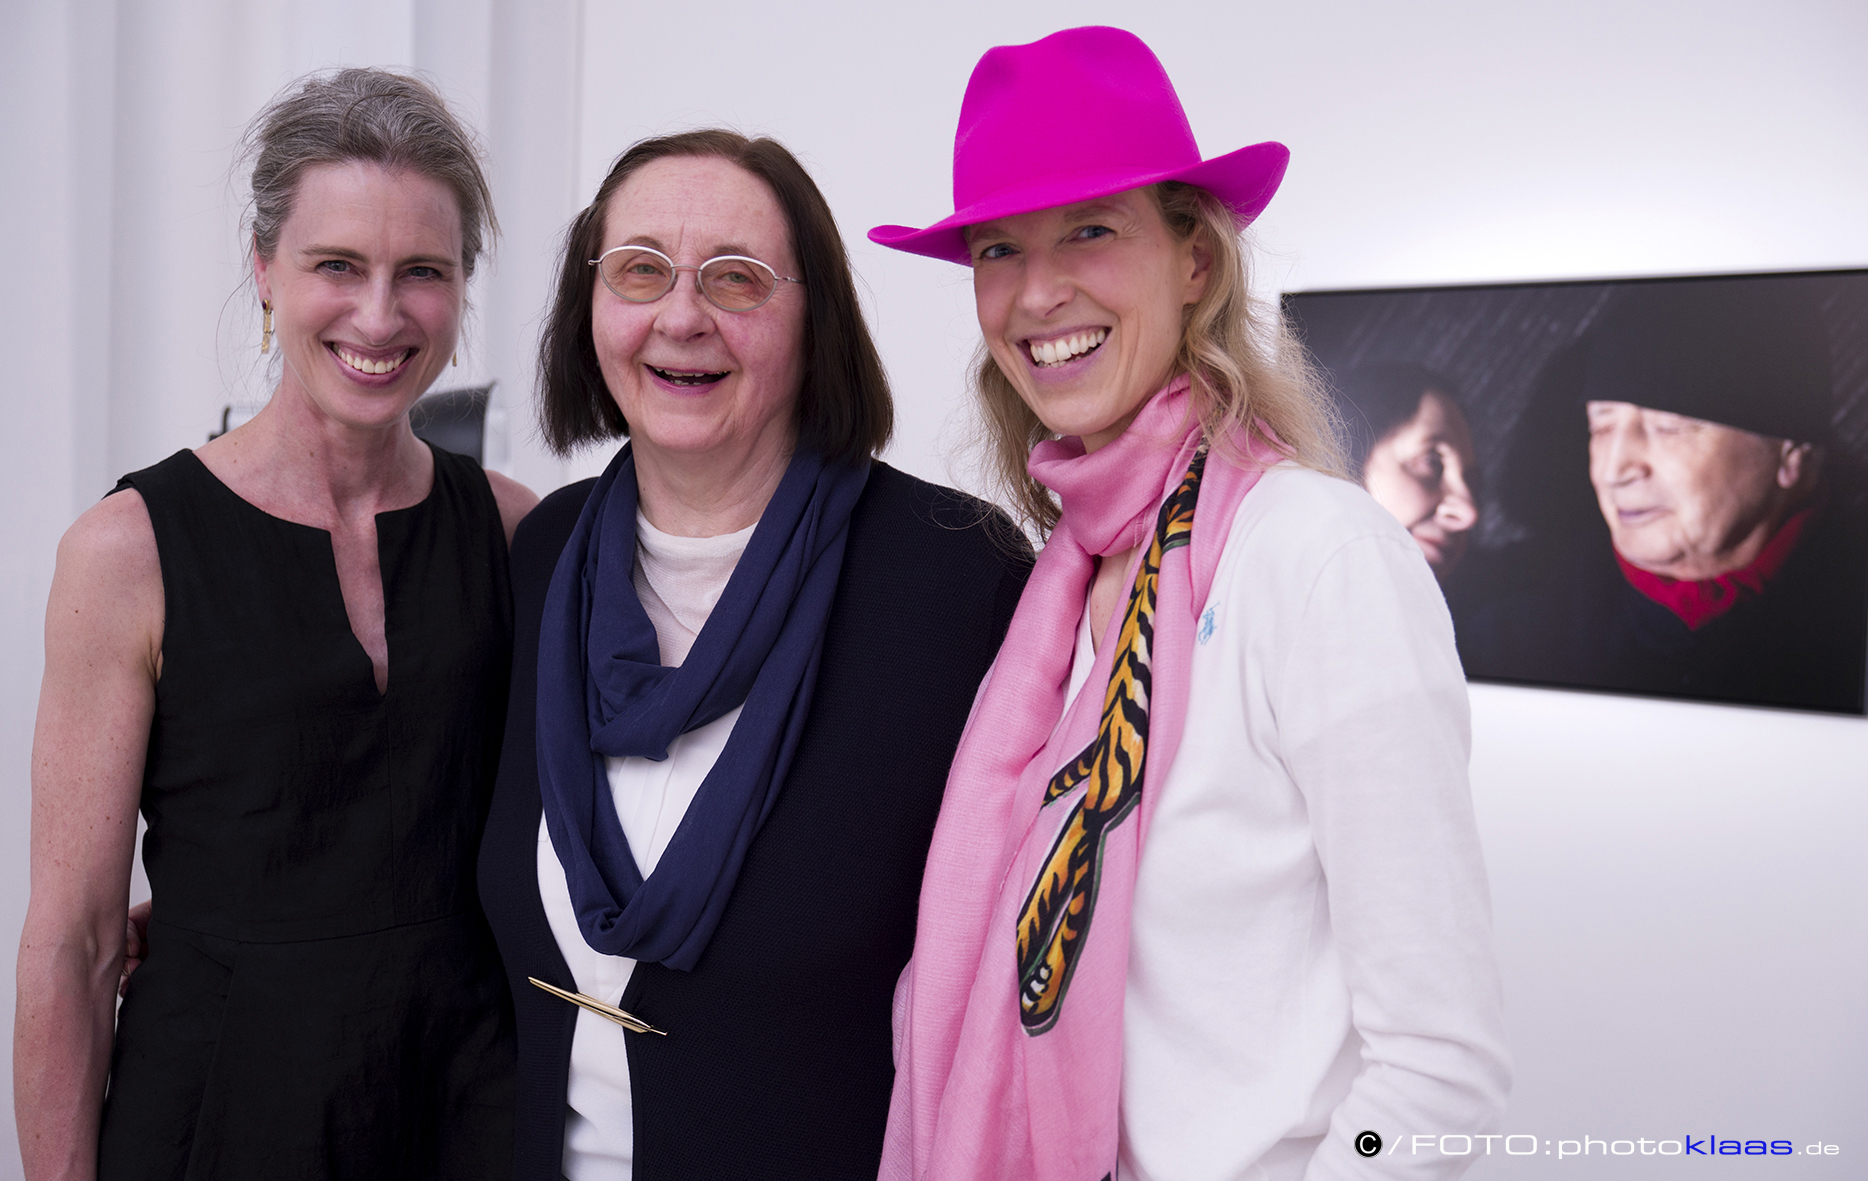  Foto 3: v.l.n.r. Frau Dr. Vera Geisel und die beiden Künstlerinnen Prof. Rissa und ATM. Fotos mit freundlicher Erlaubnis von  www.photostudioklaas.de  